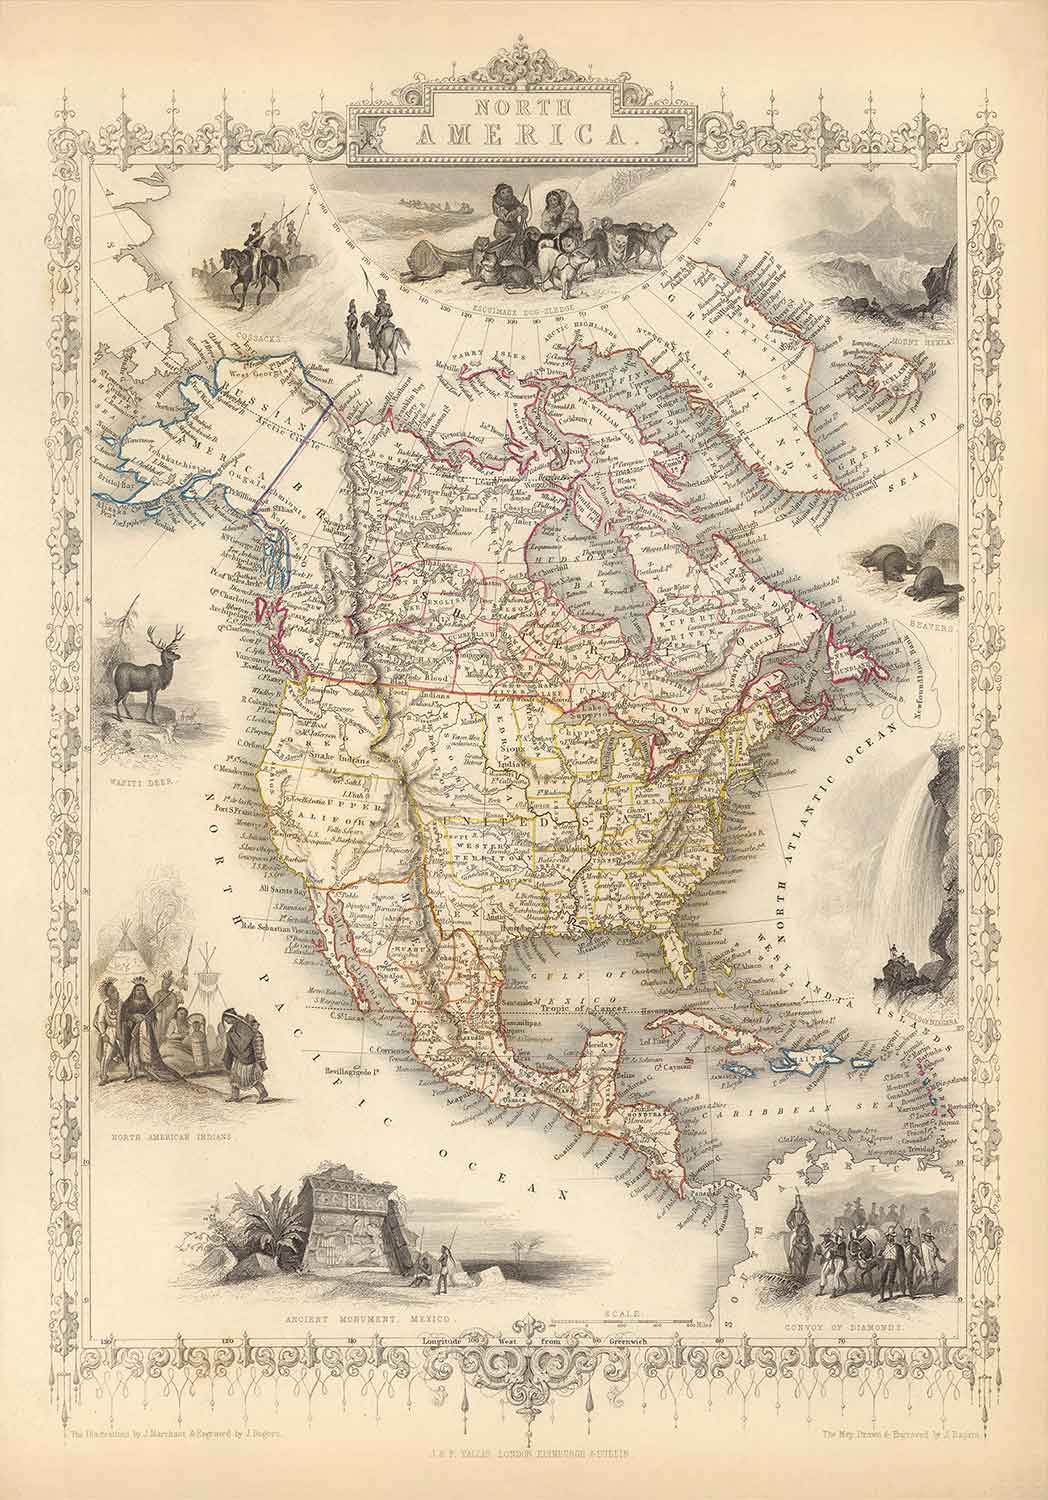 Ancienne carte de l'Amérique du Nord, 1851 par Tallis & Rapkin - Illustration des États-Unis, du Canada, du Mexique, des esquimaux, des castors et des autochtones.